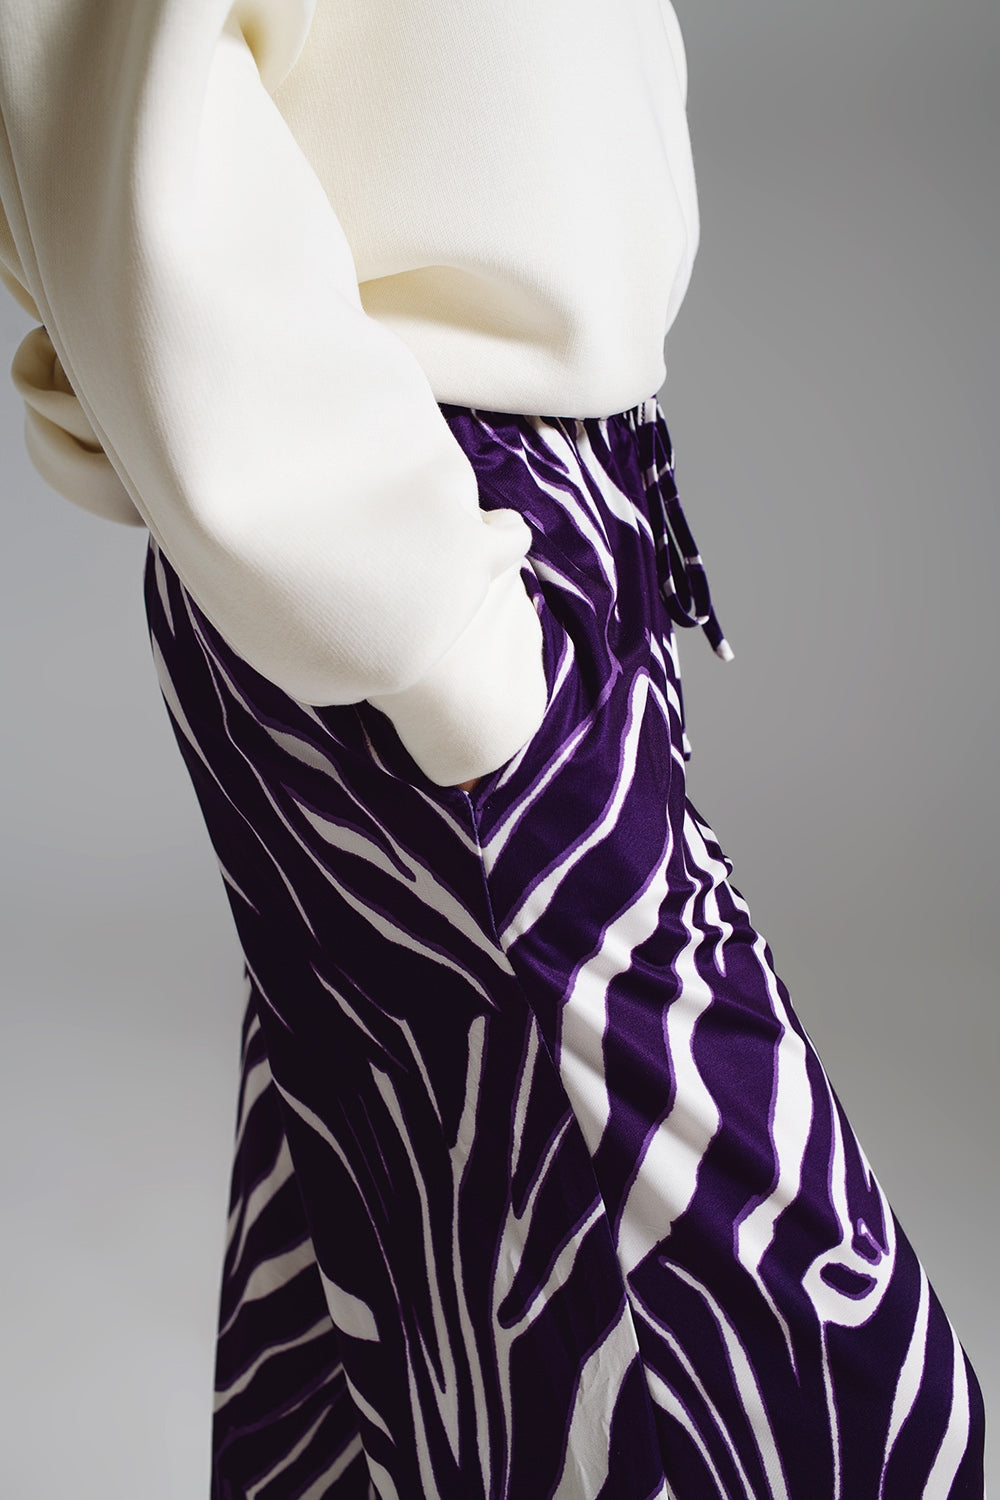 Pantaloni dritti con stampa zebra in viola e bianco